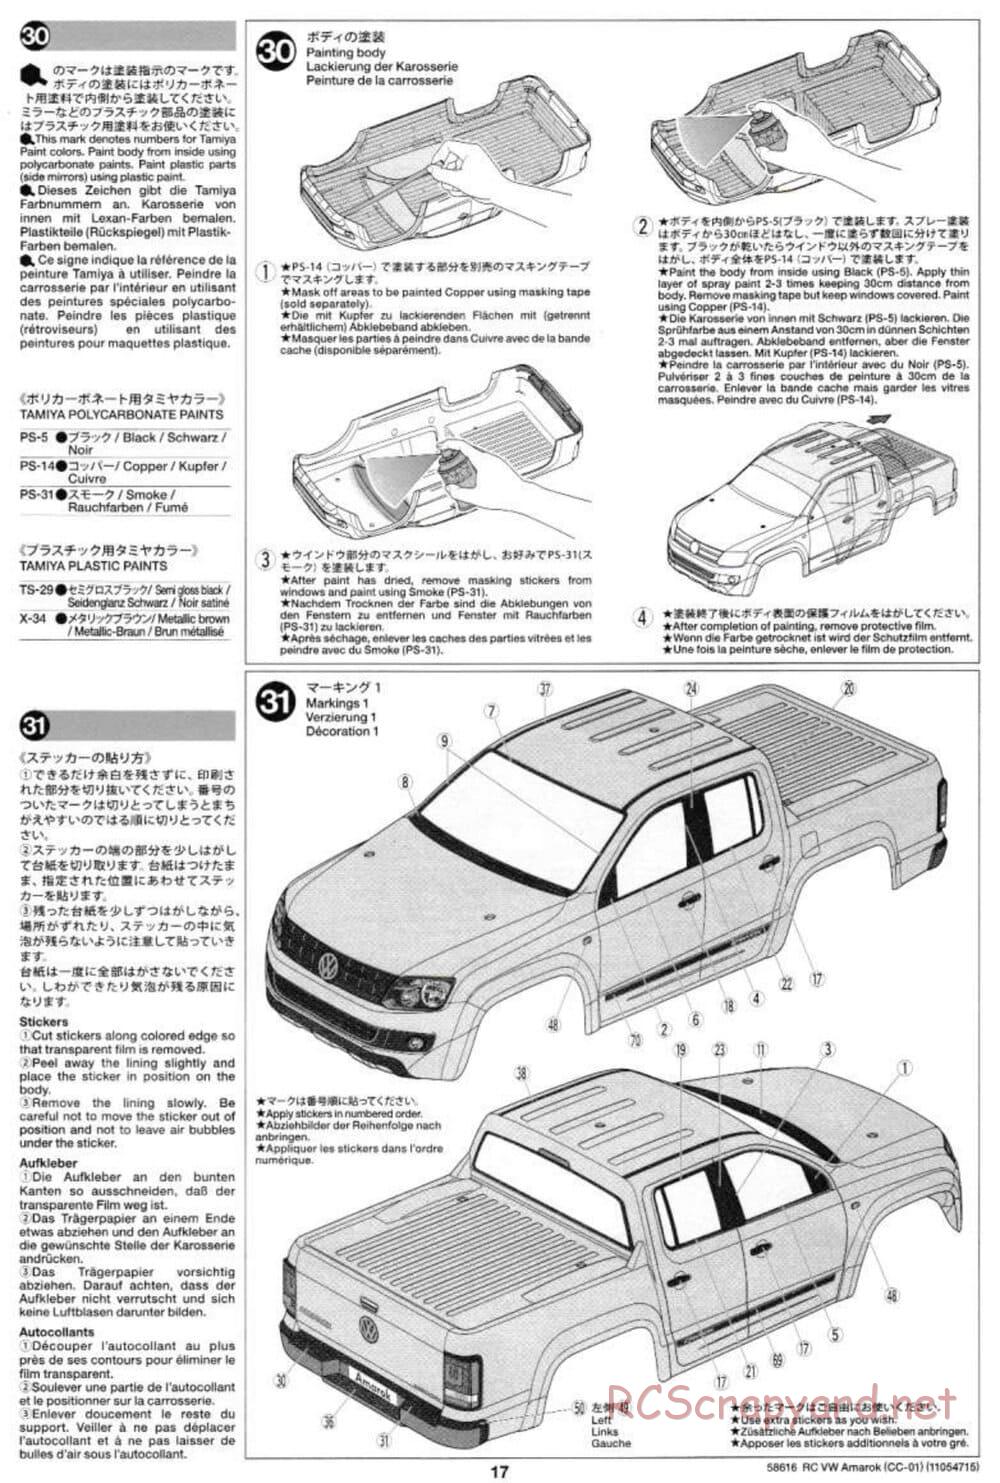 Tamiya - Volkswagen Amarok - CC-01 Chassis - Manual - Page 17